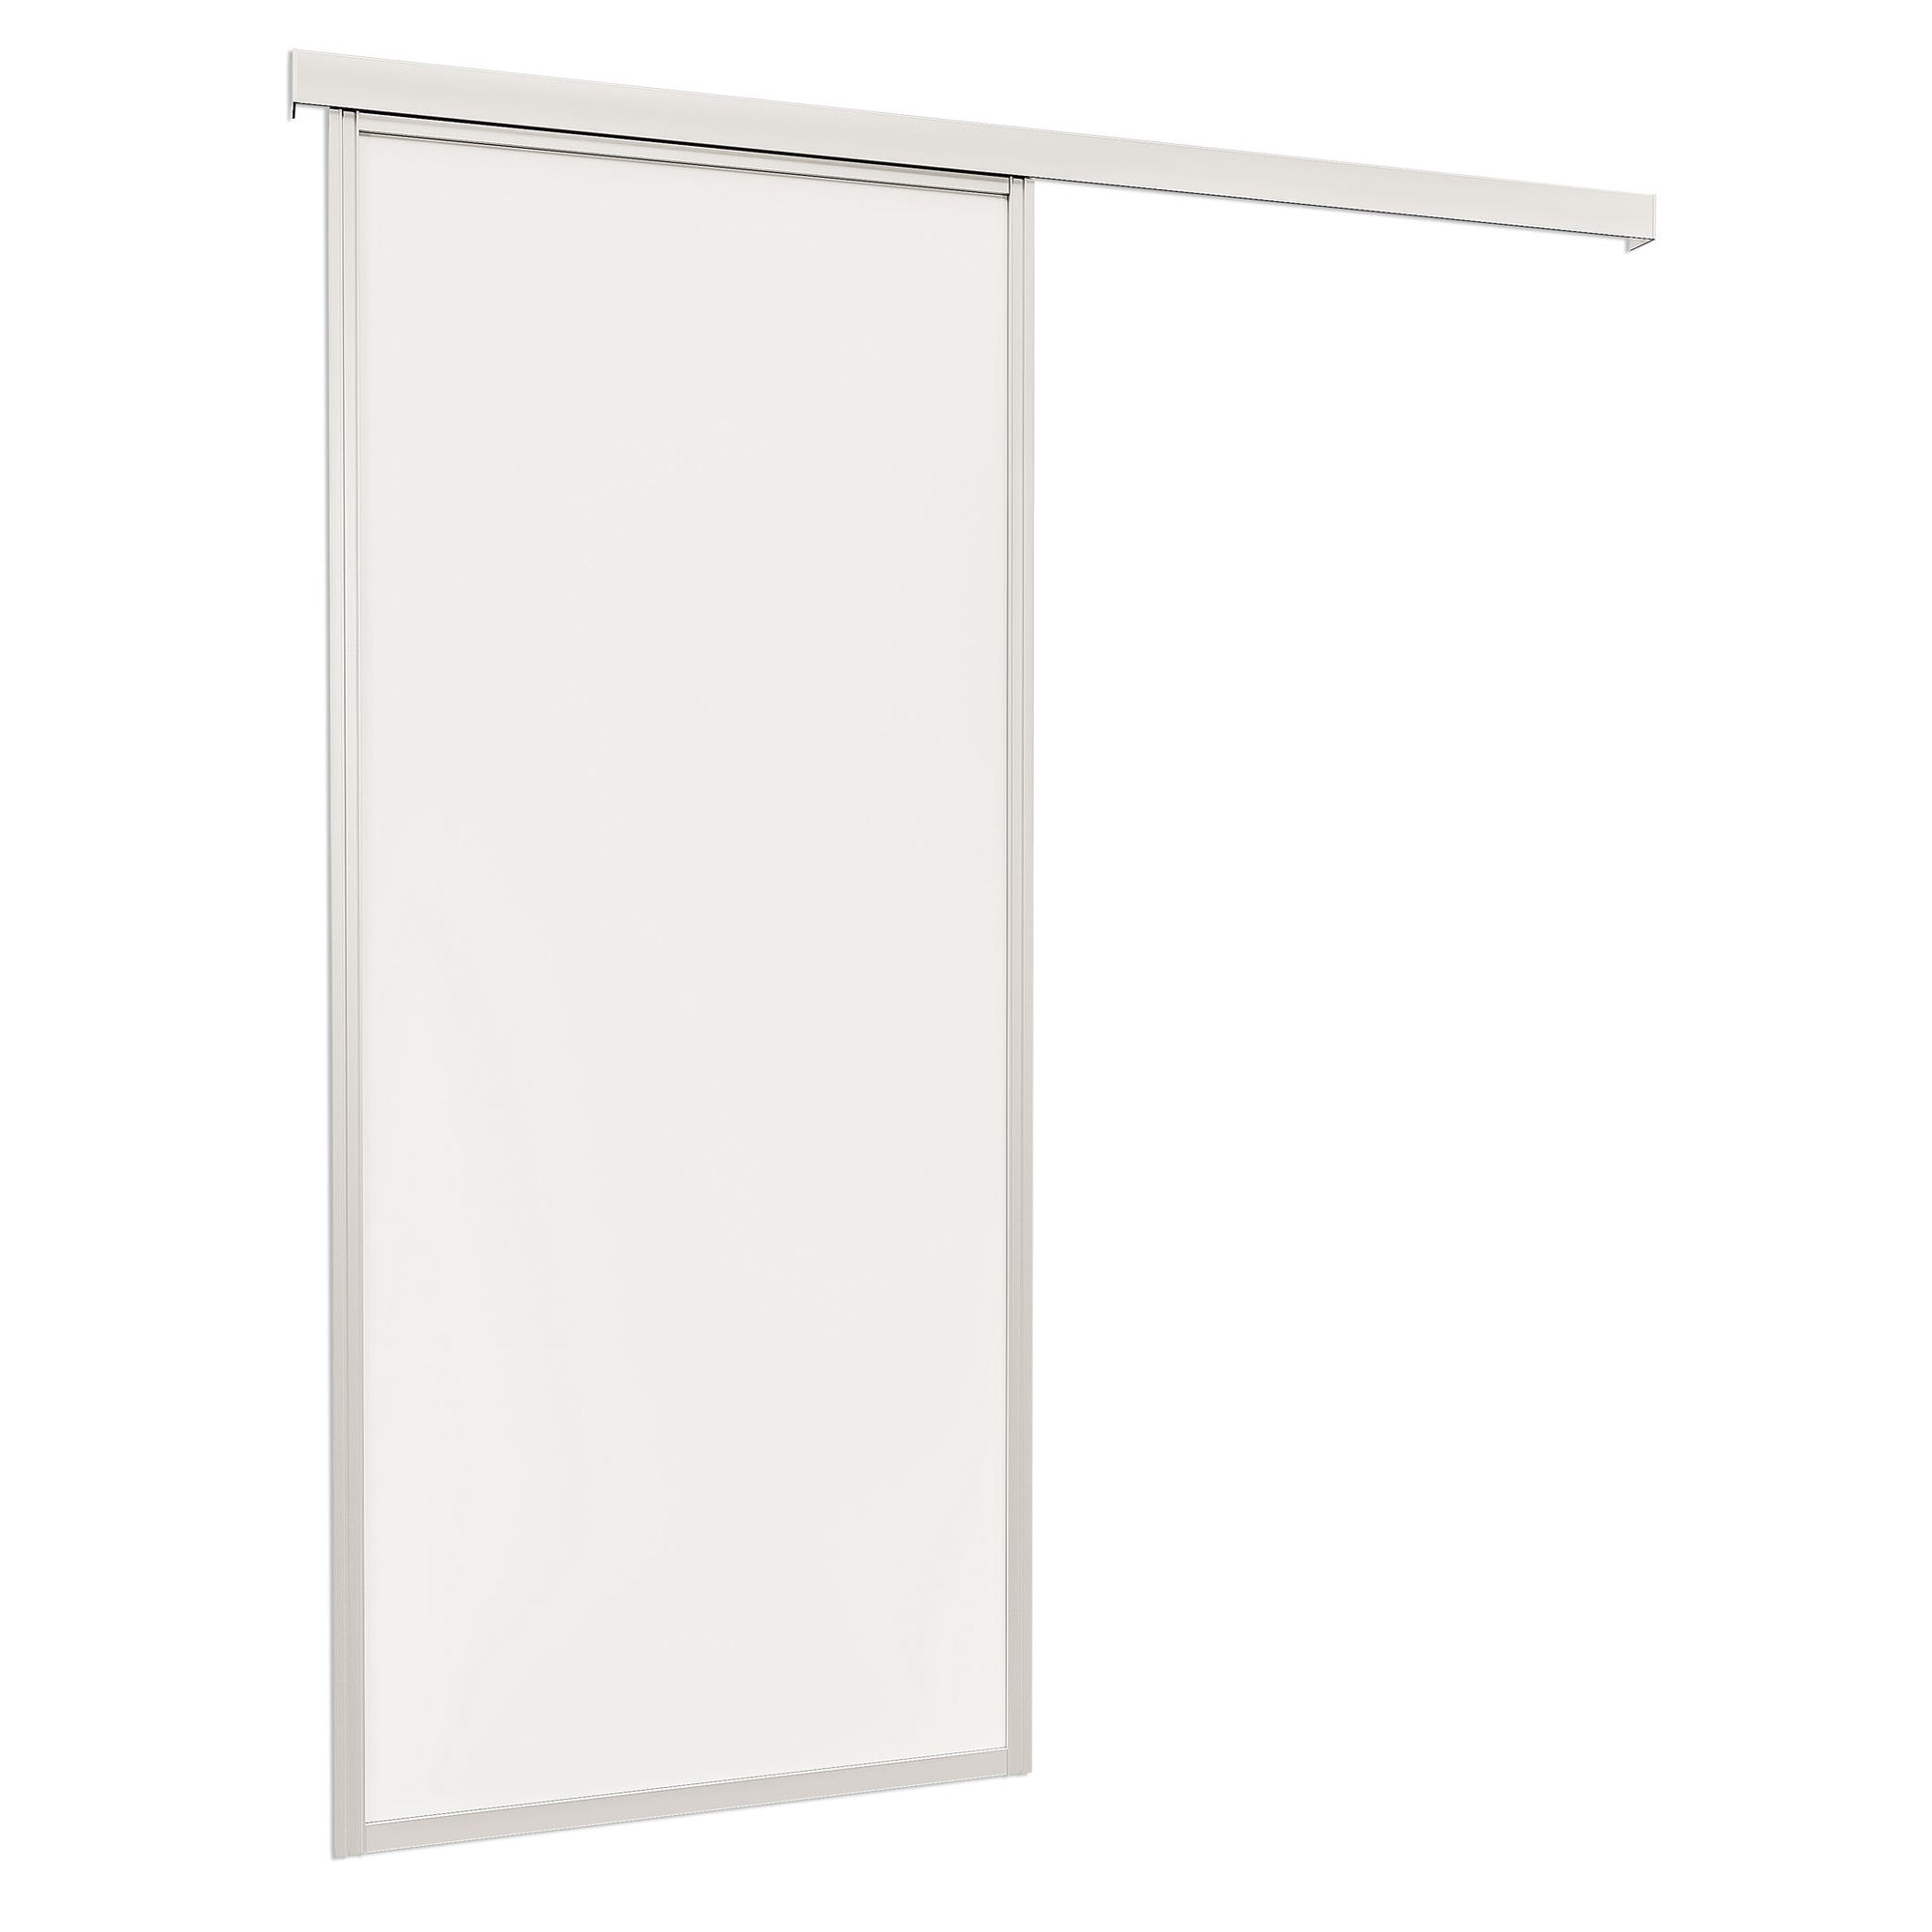 Schulte Porte pleine coulissante intérieure en bois, 74 x 203 cm, décor bois blanc mat, cadre alu - Double amortisseur Softclose 1